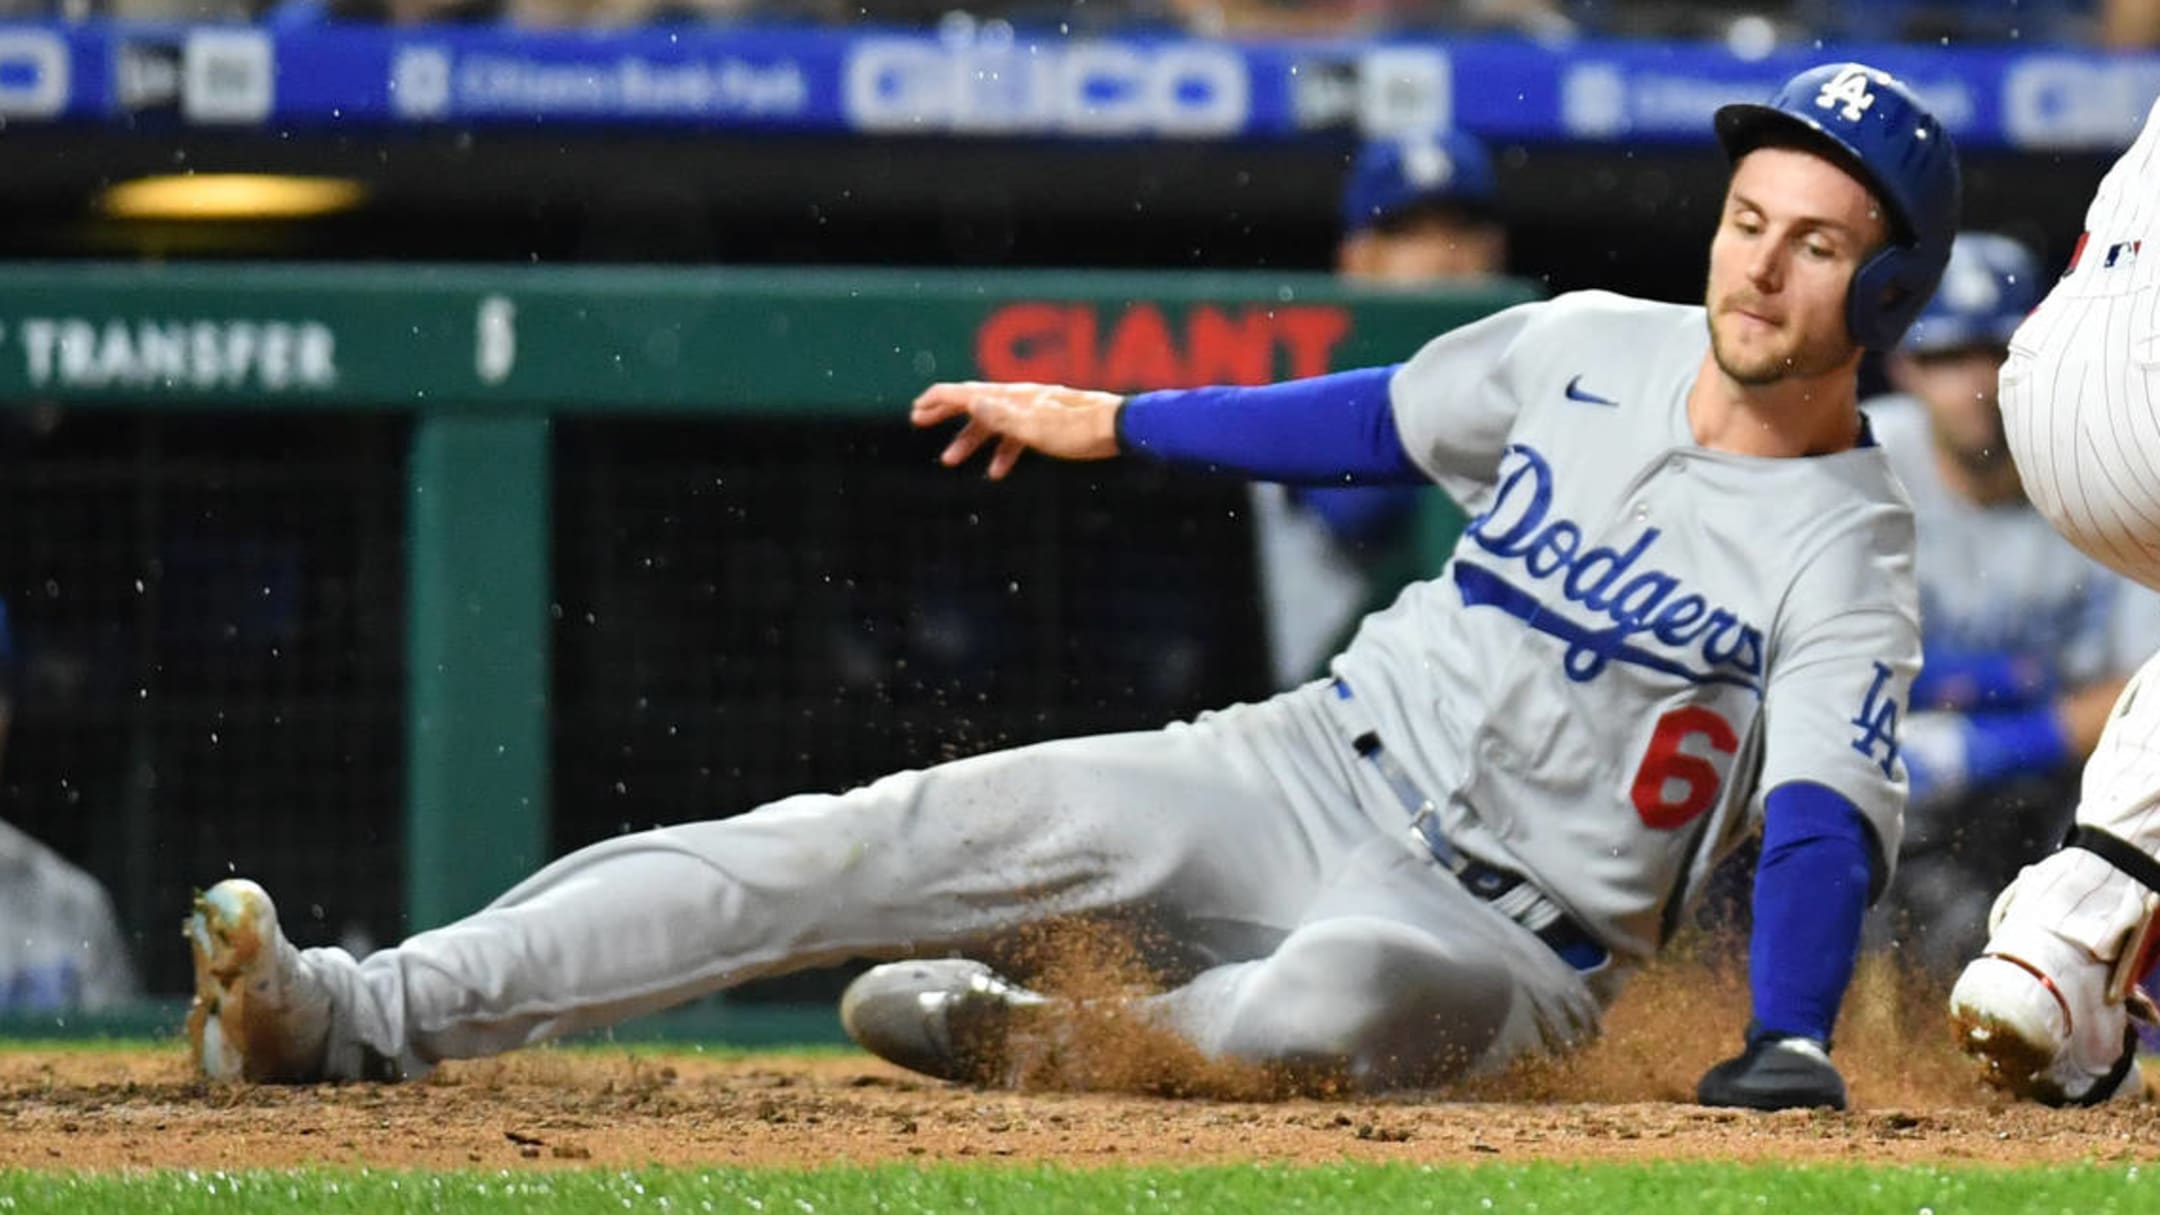 LA Dodgers Trea Turner pulls of the smoothest slide in MLB history